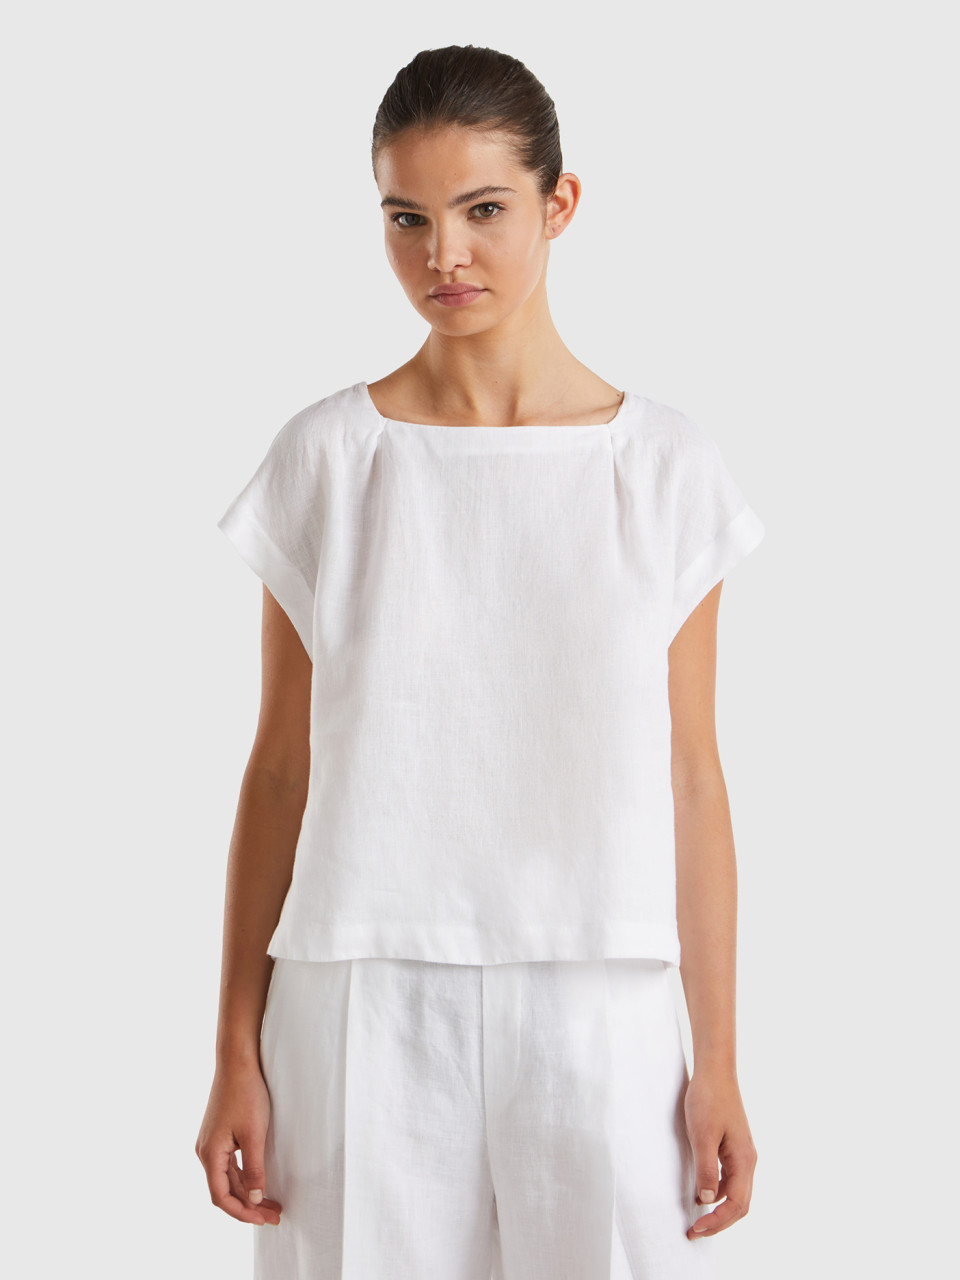 Benetton, Square Neck Blouse In Pure Linen, White, Women